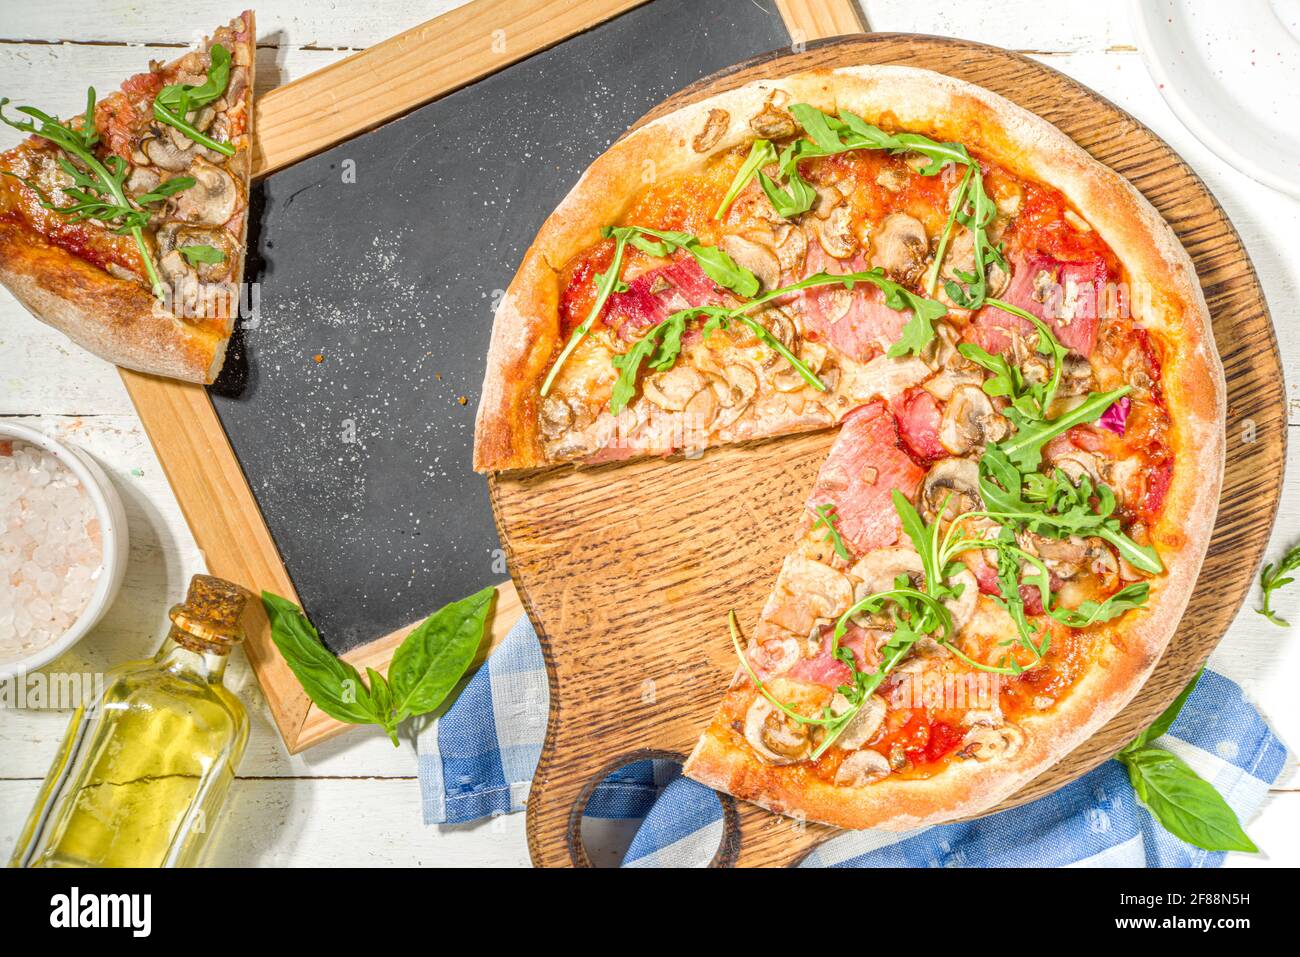 Savoureuse pizza traditionnelle italienne avec jambon et champignons, sur fond de bois blanc. Concept de recette de cuisine méditerranéenne, vue de dessus Banque D'Images